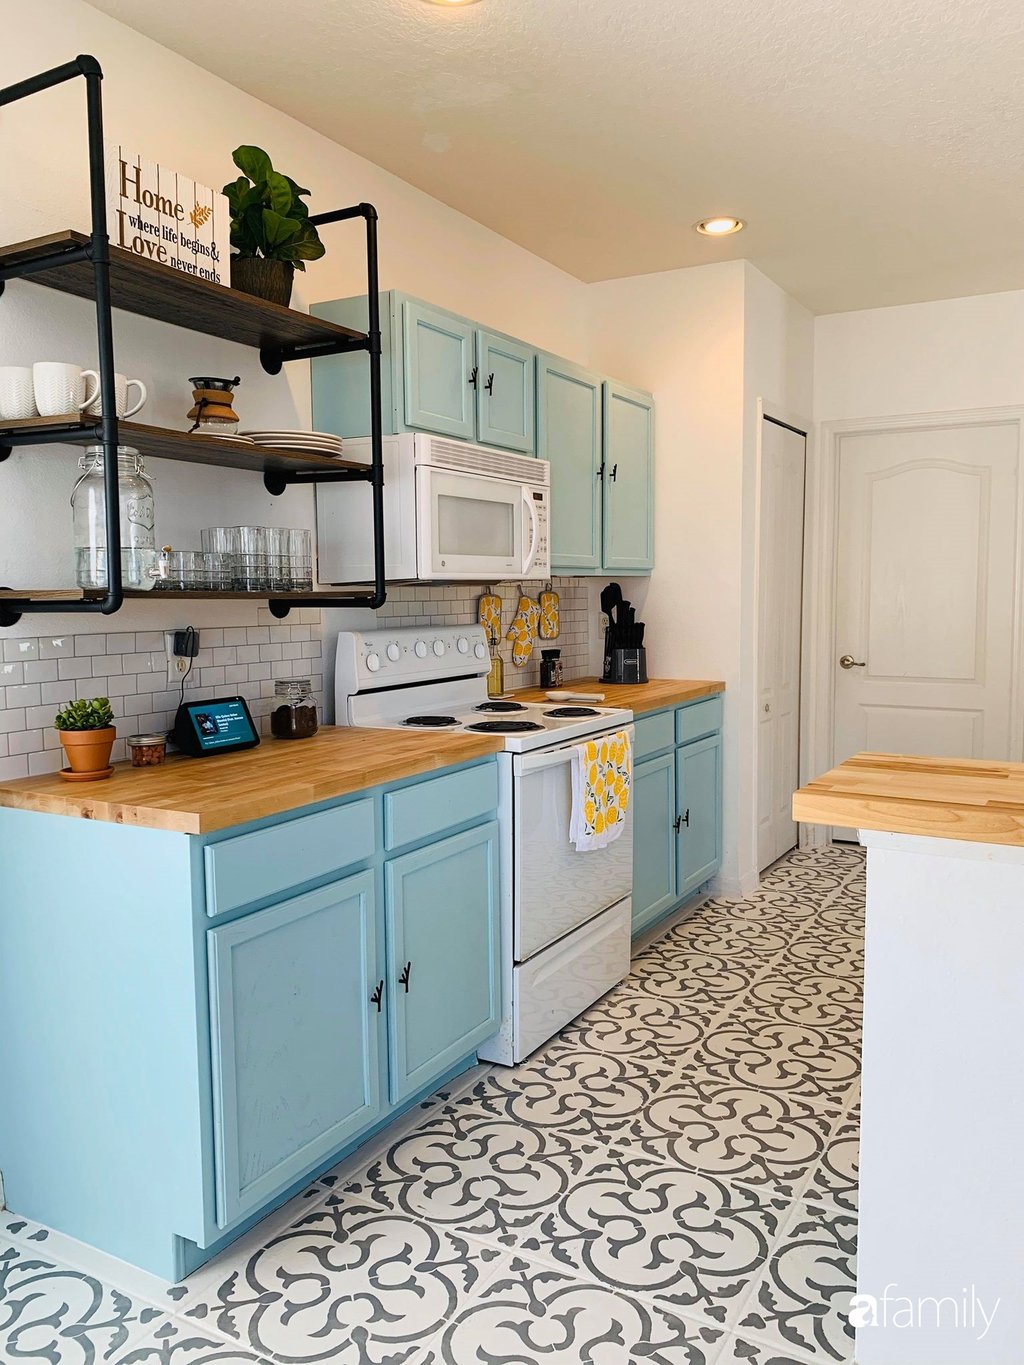 Không gian phòng bếp lấy tông màu xanh dương làm điểm nhấn. Kết hợp cùng chất liệu gỗ tối màu ấm áp.